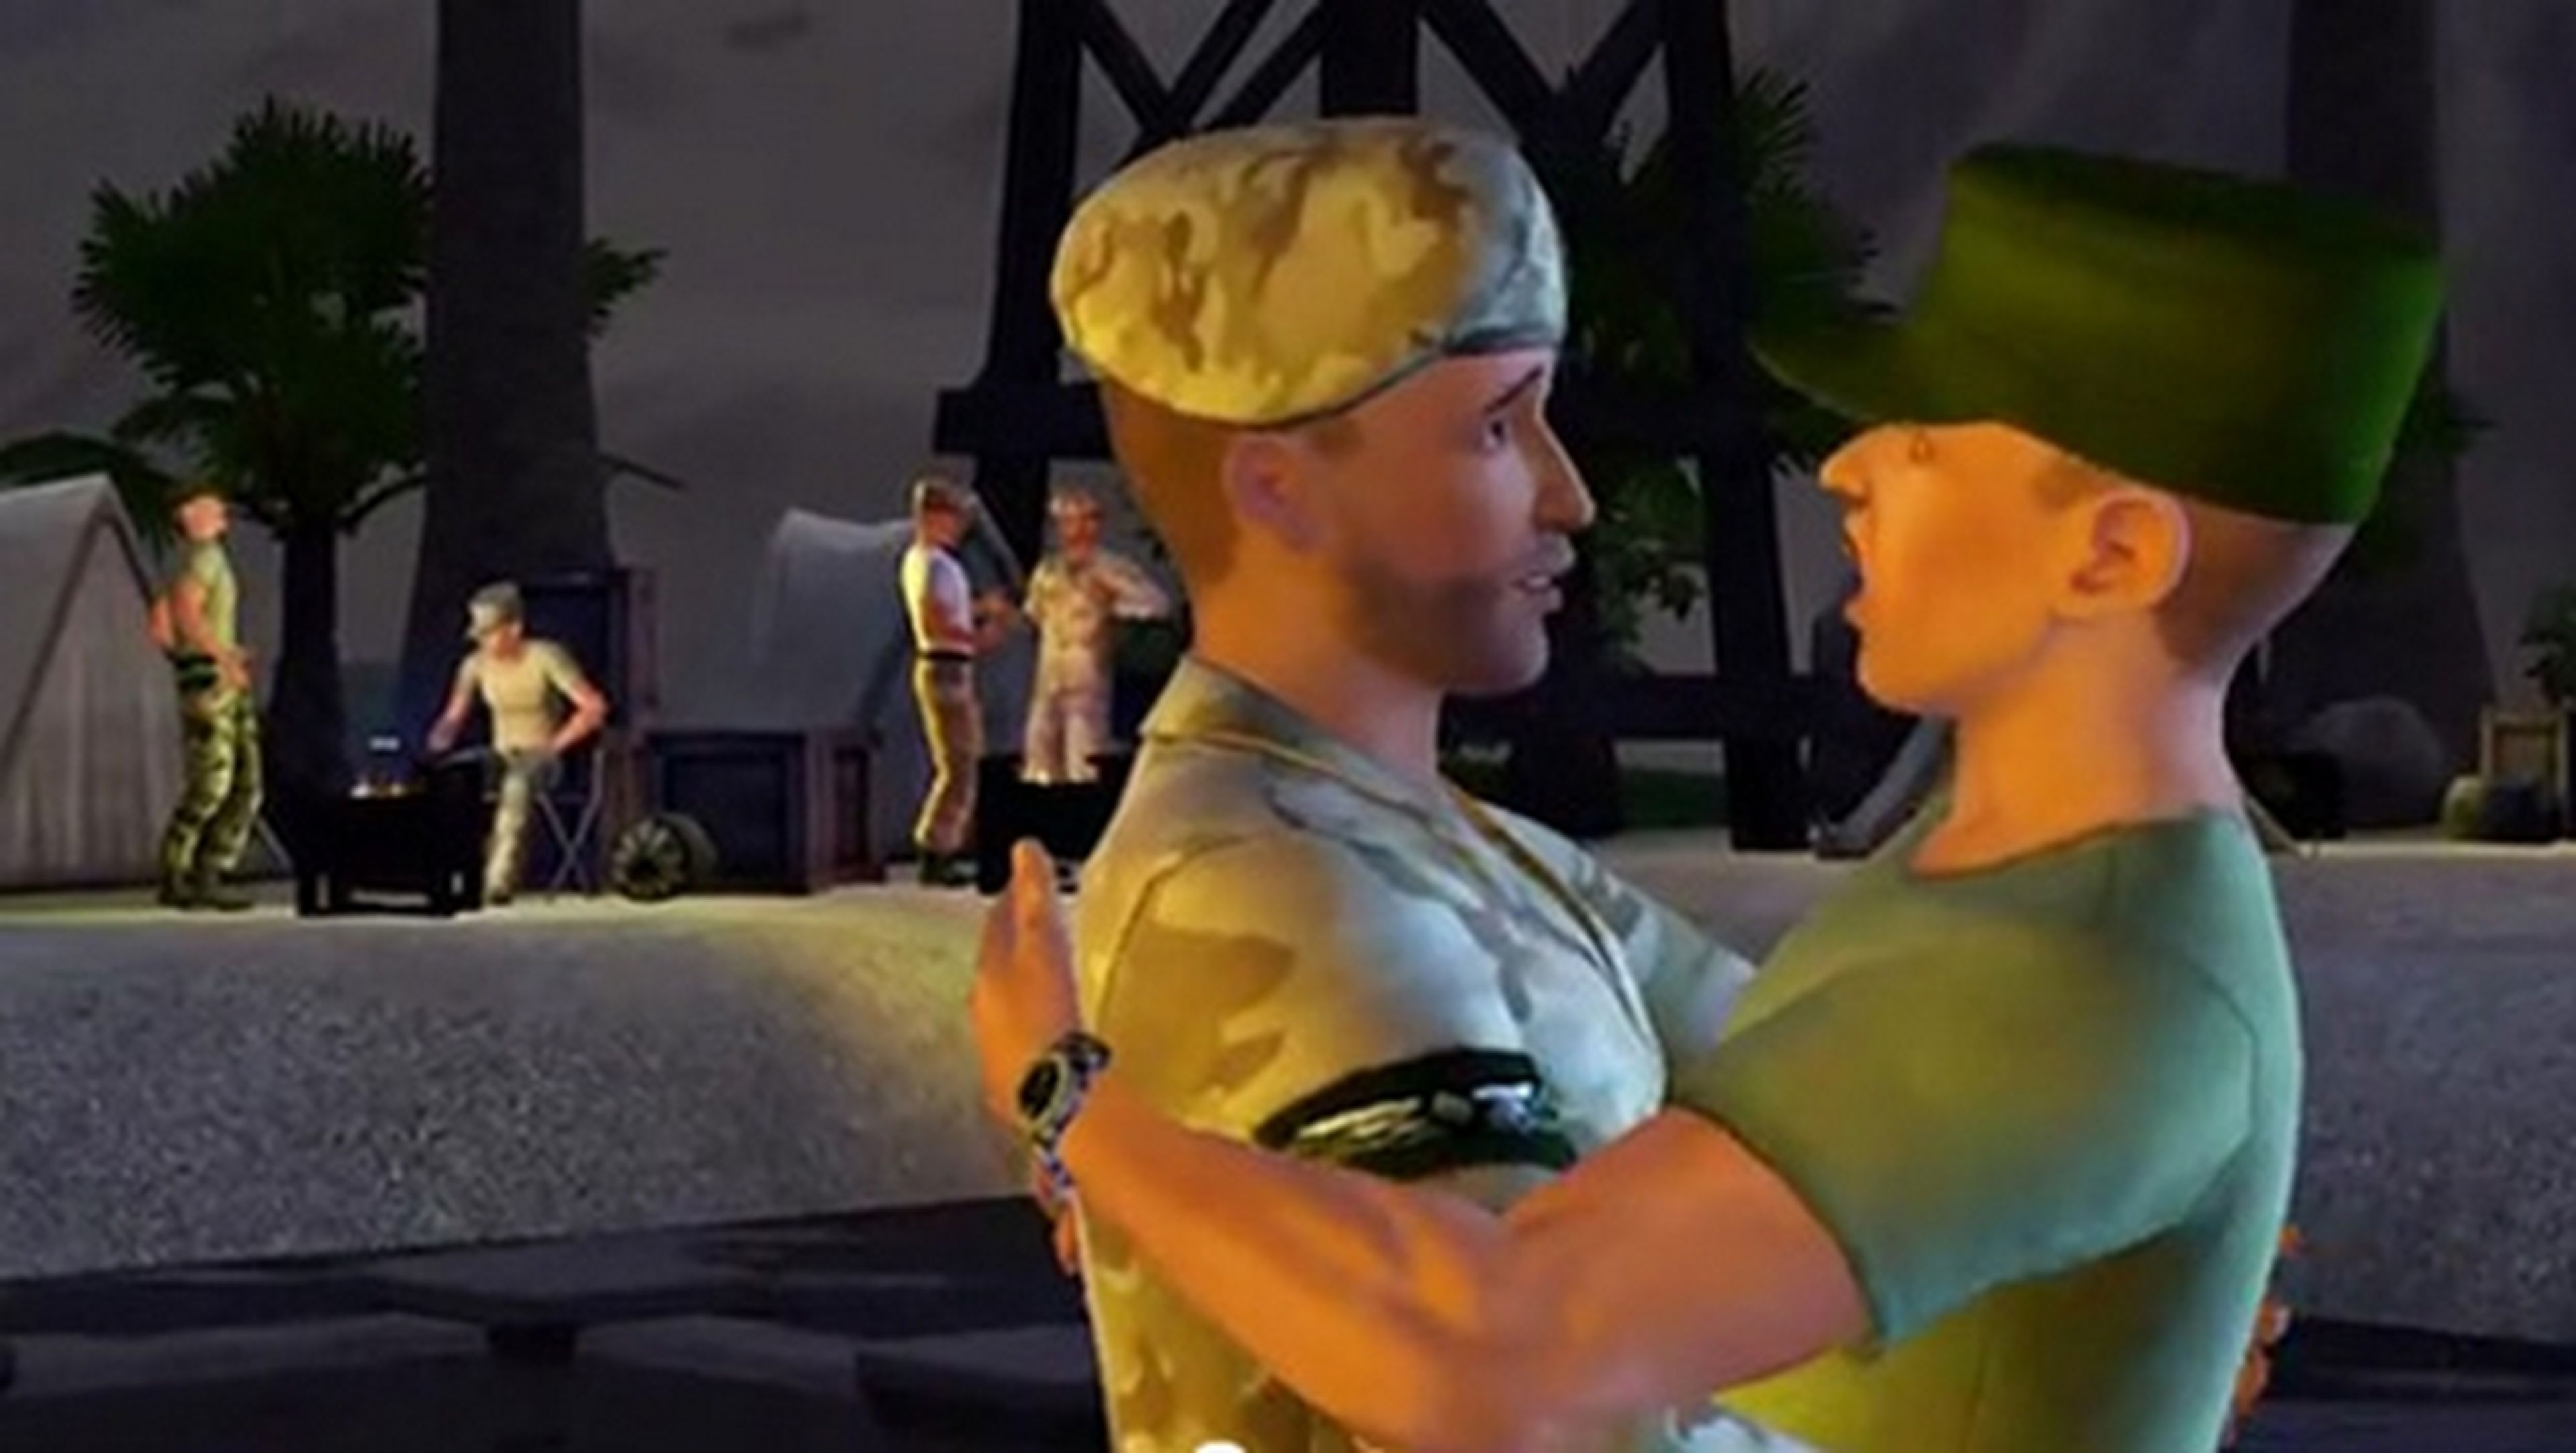 Los Sims 4, para mayores de 18 años en Rusia por incluir relaciones homosexuales.